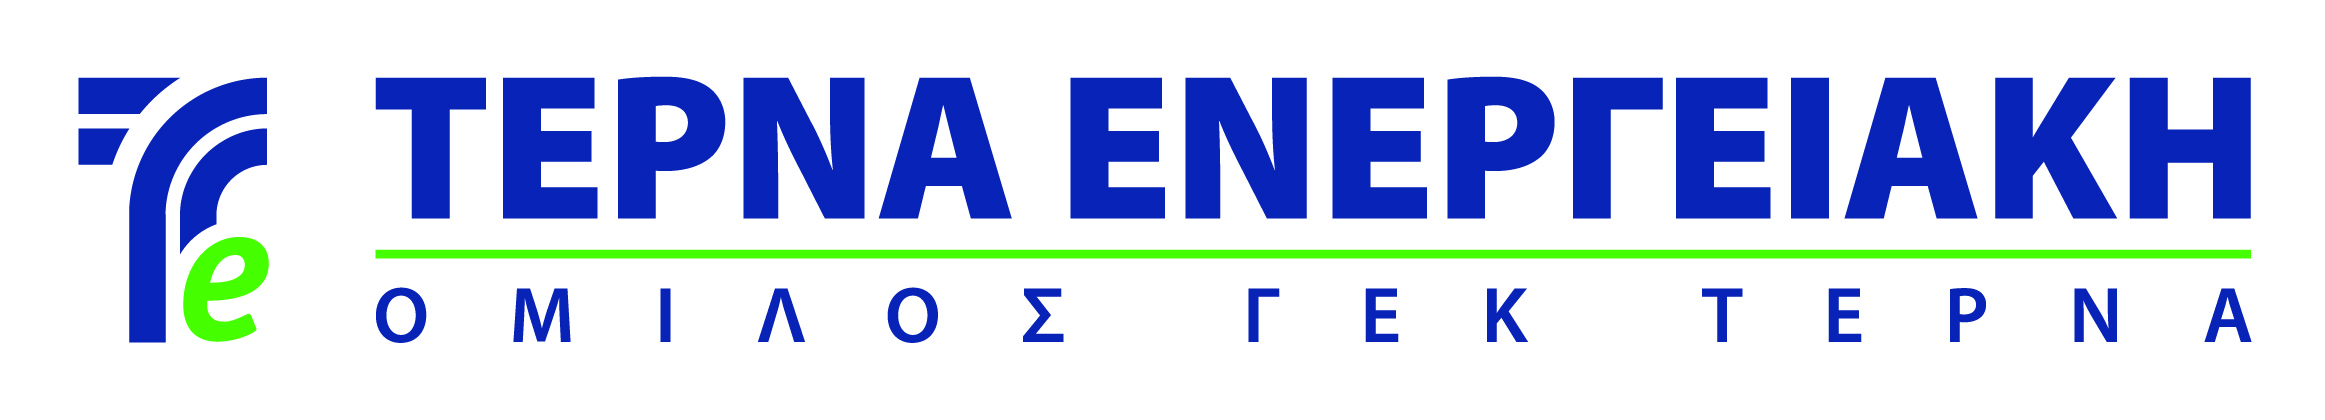 TERNA ENERGY GR logo